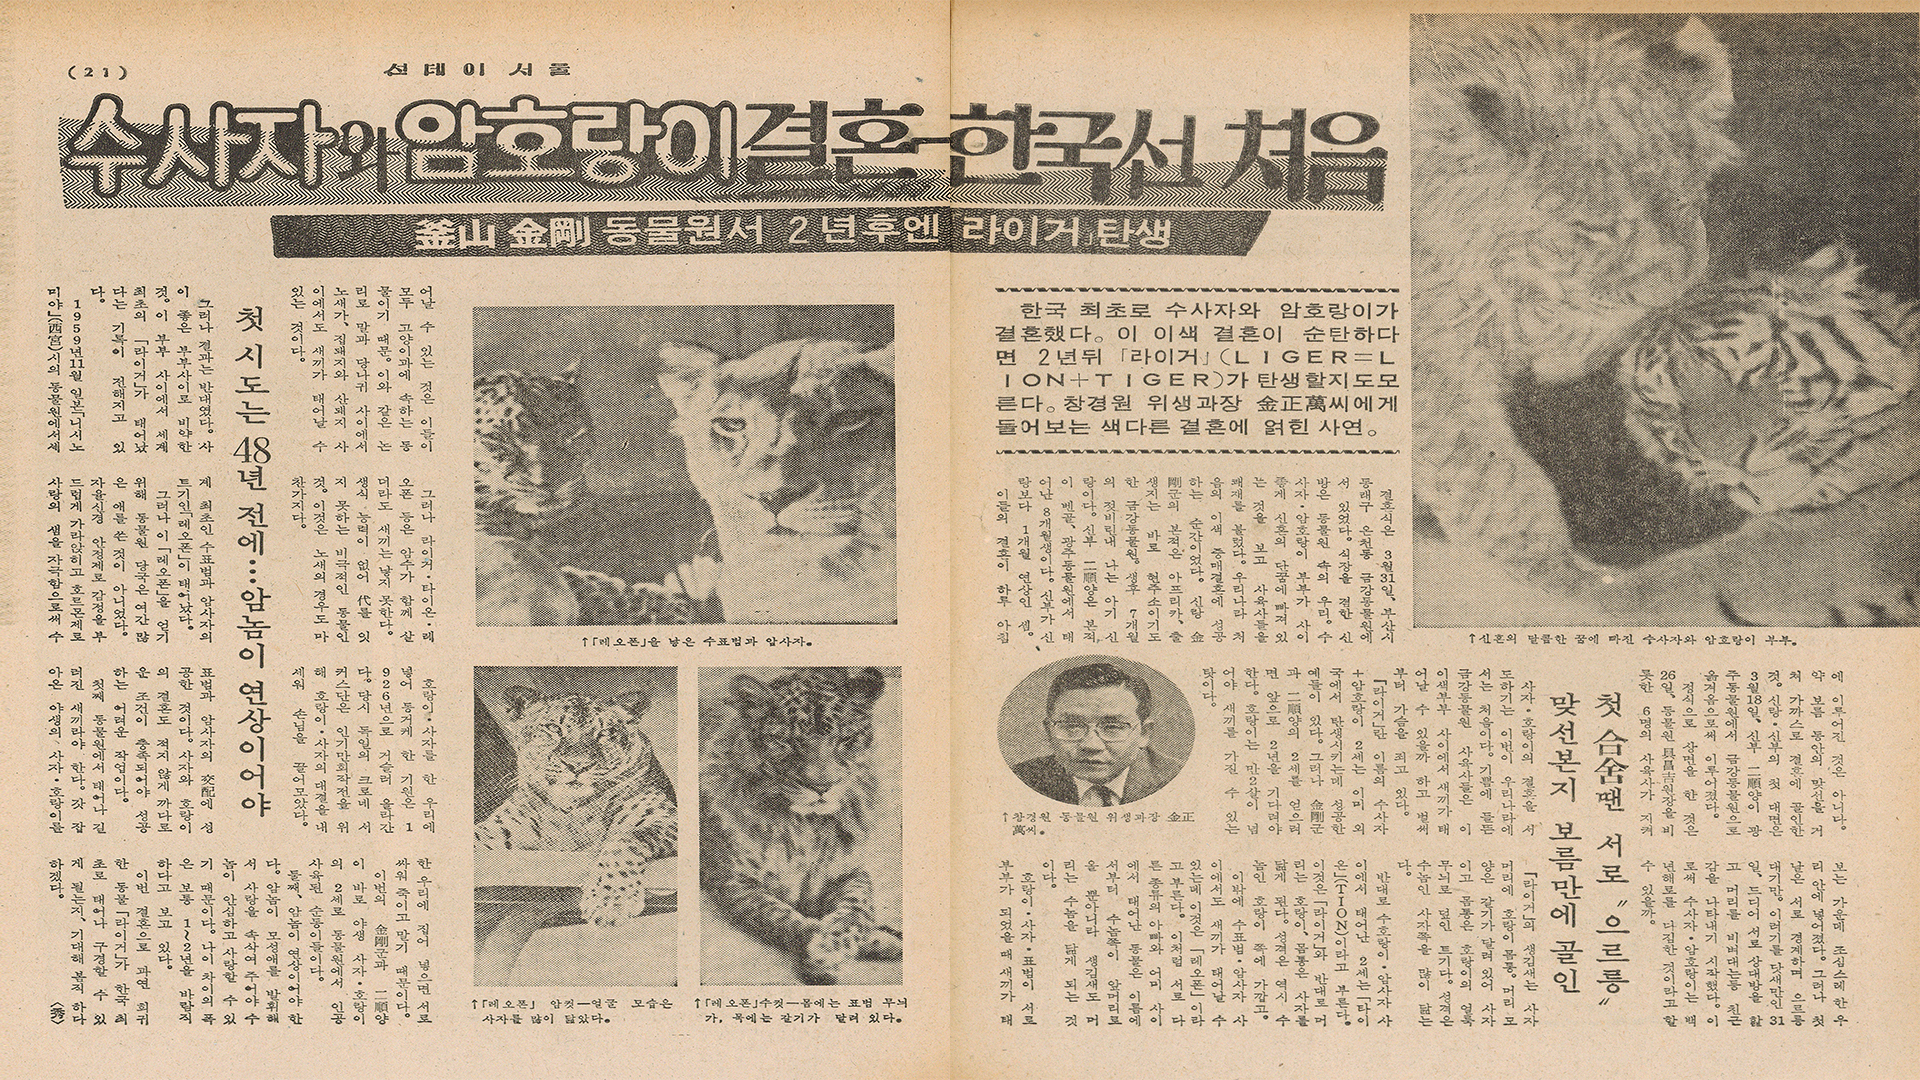 선데이 서울 제286호(1974년 4월 14일자)에 실린 ‘수사자와 암호랑이 결혼, 한국선 처음 - 부산 금강동물원서 2년 후엔 ‘라이거’ 탄생’ 기사